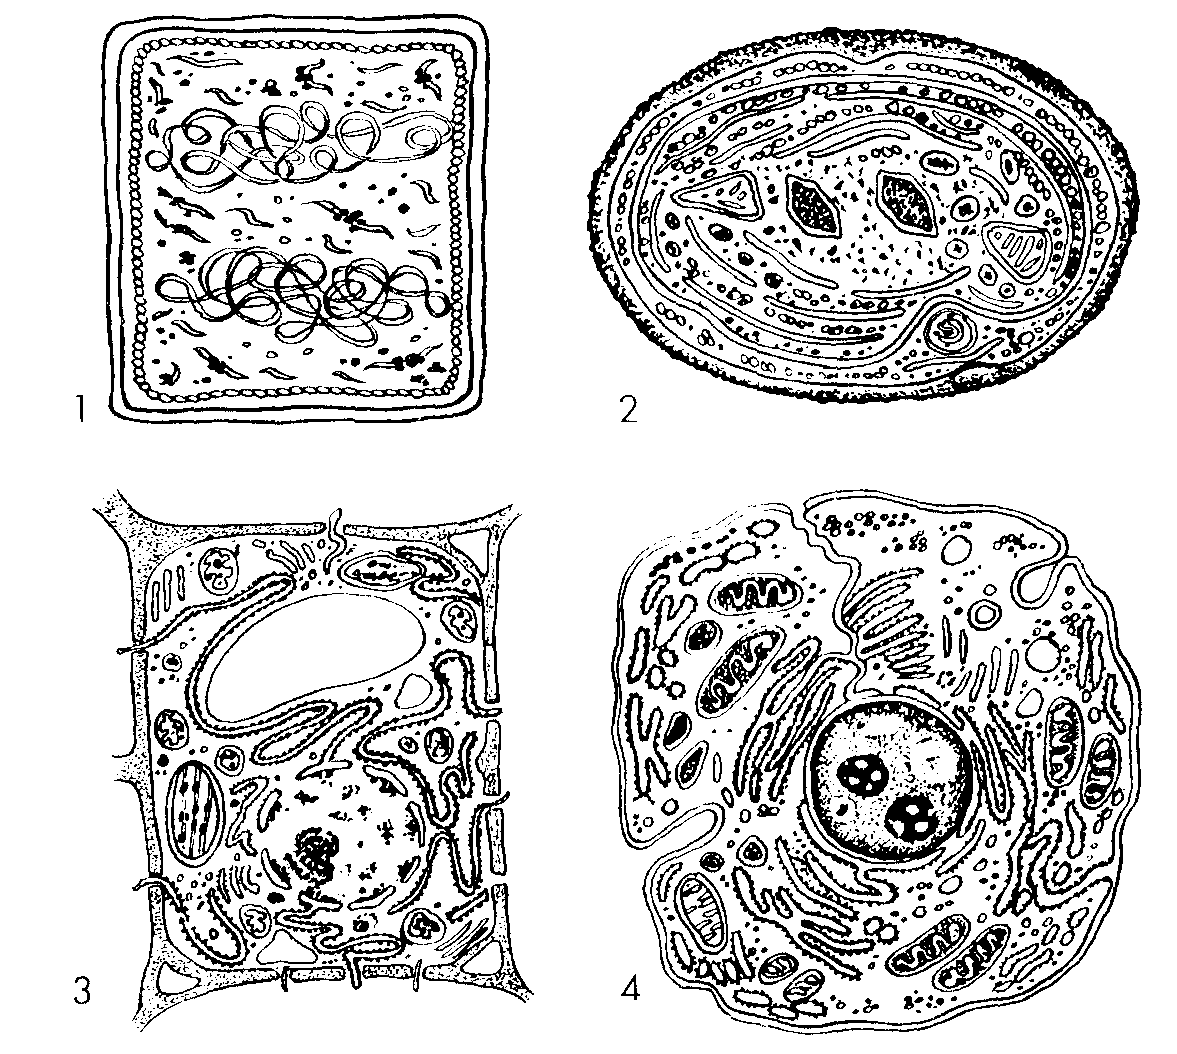 Животная растительная грибная бактериальная клетки. Строение растительной клетки схема черно-белая. Ядро раст клетки. Клетки биология бактериальная грибная. Строение растительной клетки.